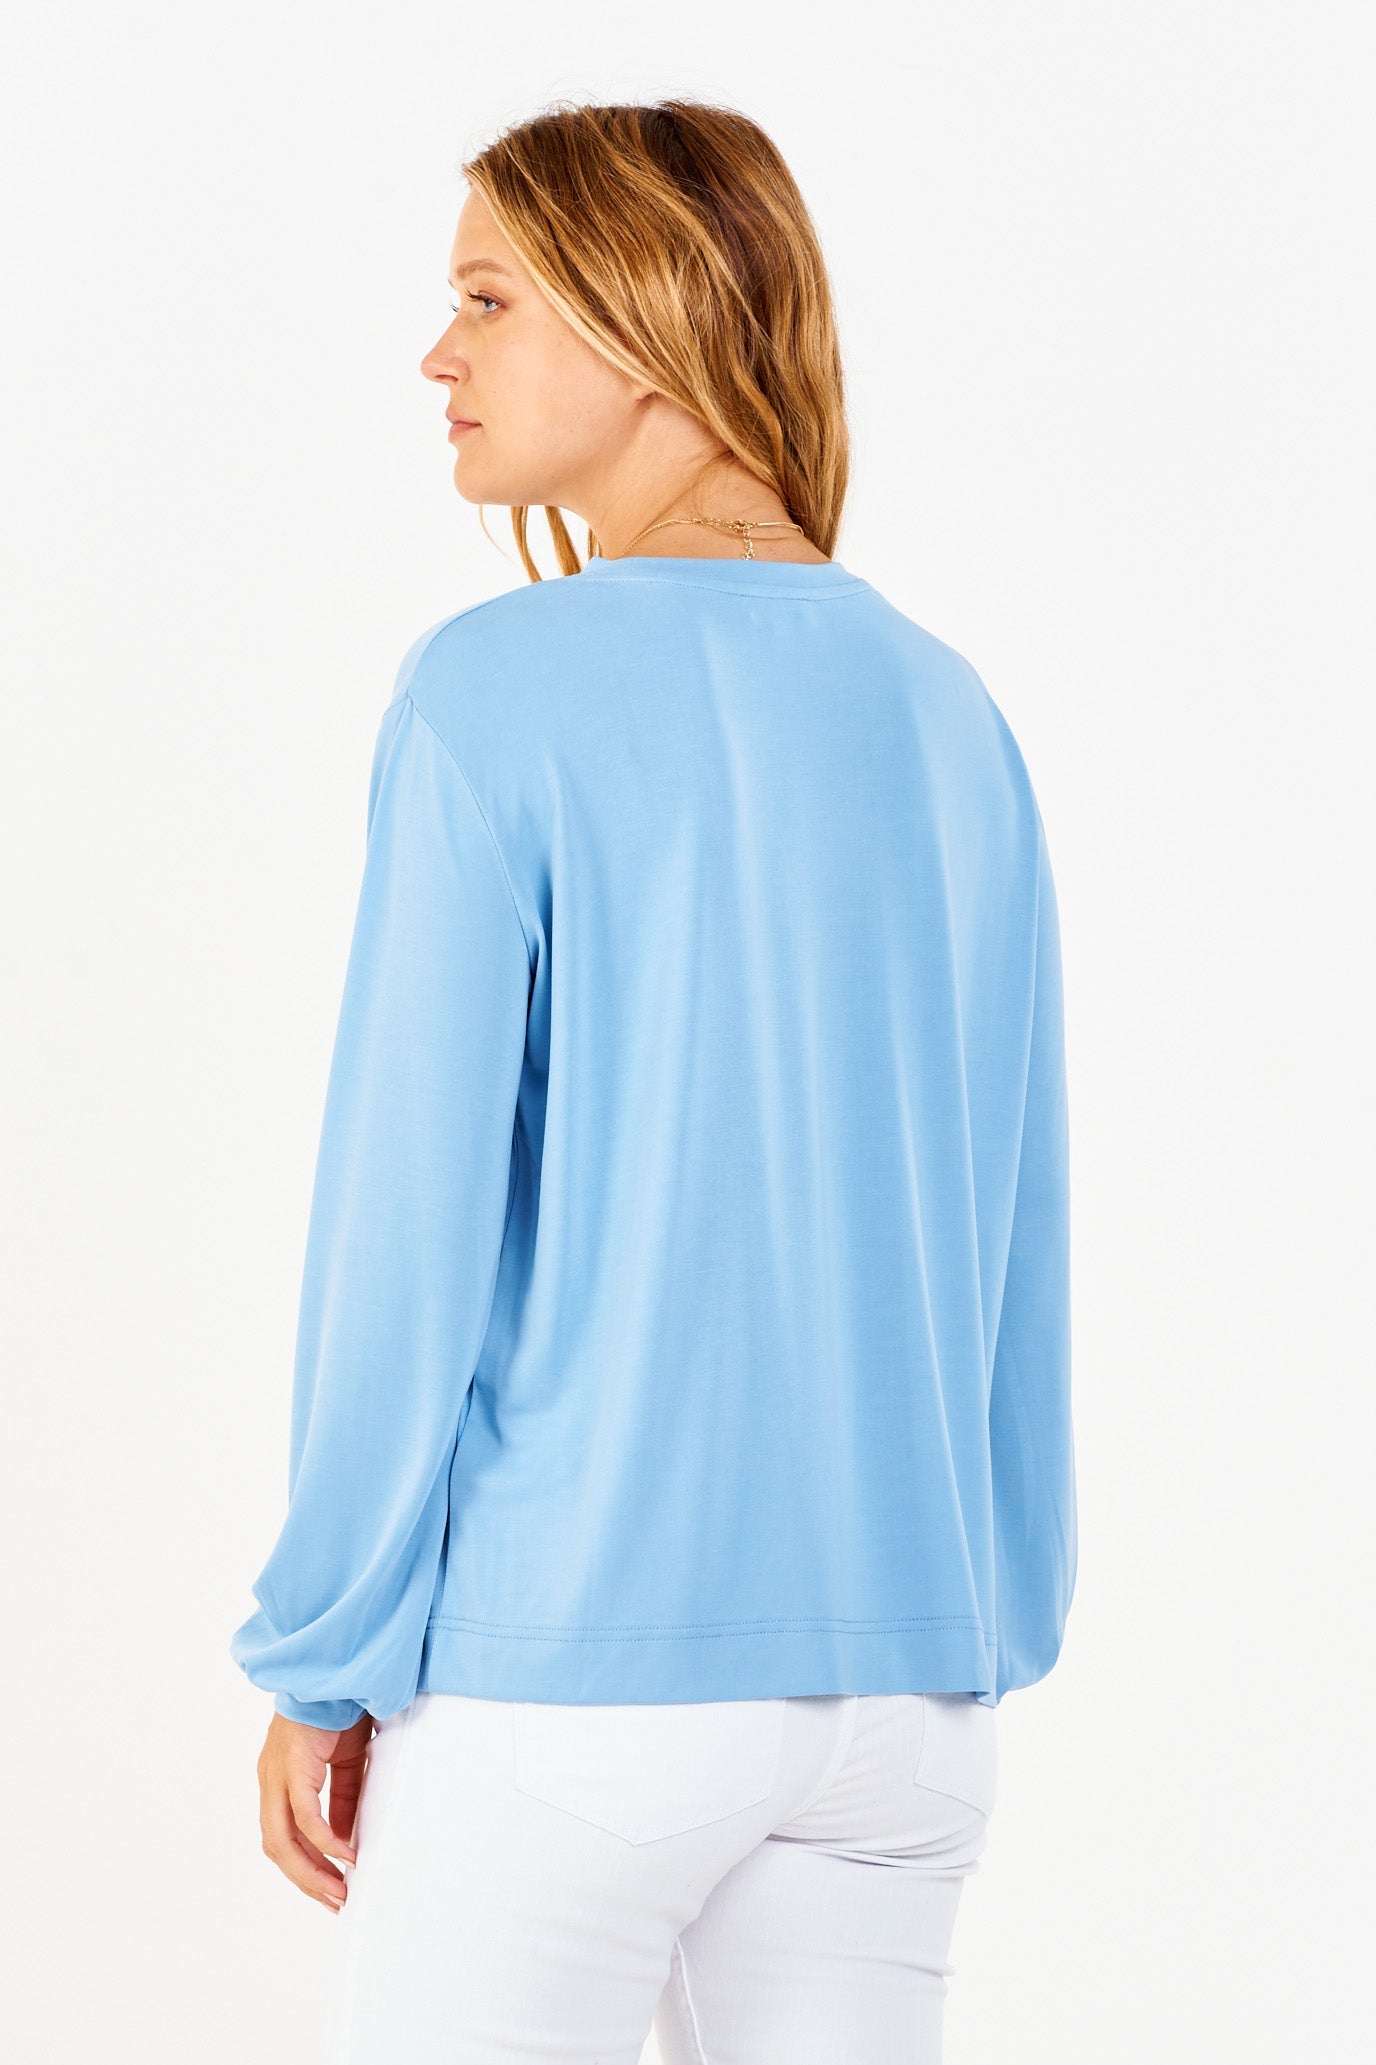 matilda-basic-long-sleeve-top-azure-back-image-another-love-clothing